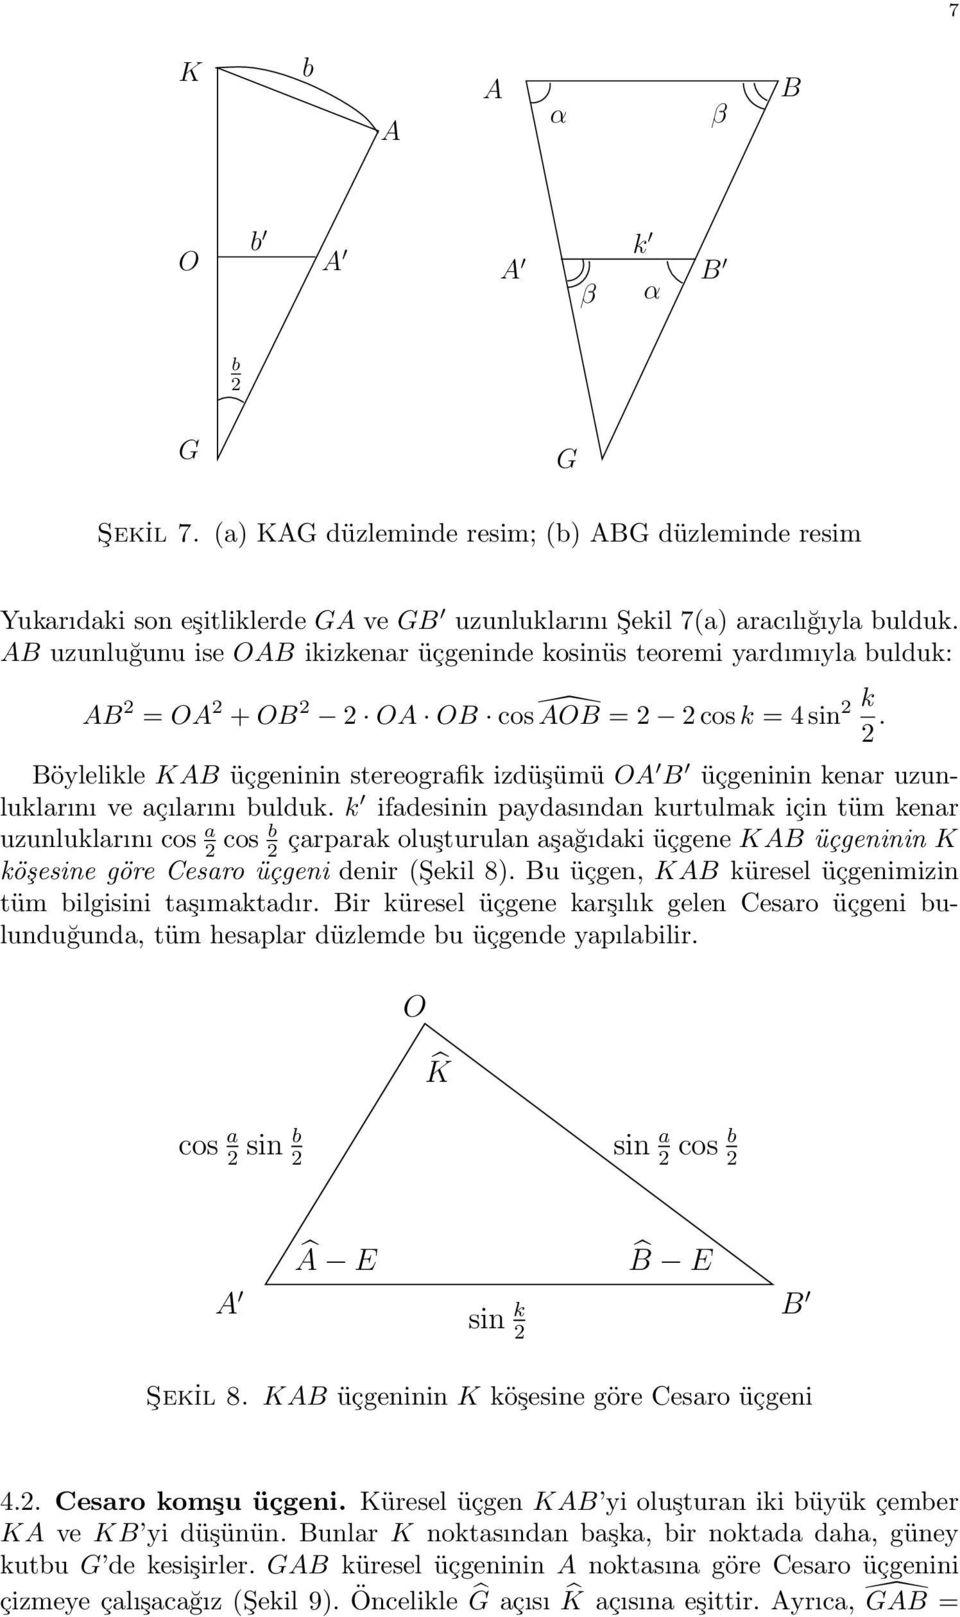 Böylelikle KAB üçgeninin stereografik izdüşümü OA B üçgeninin kenar uzunluklarını ve açılarını bulduk.